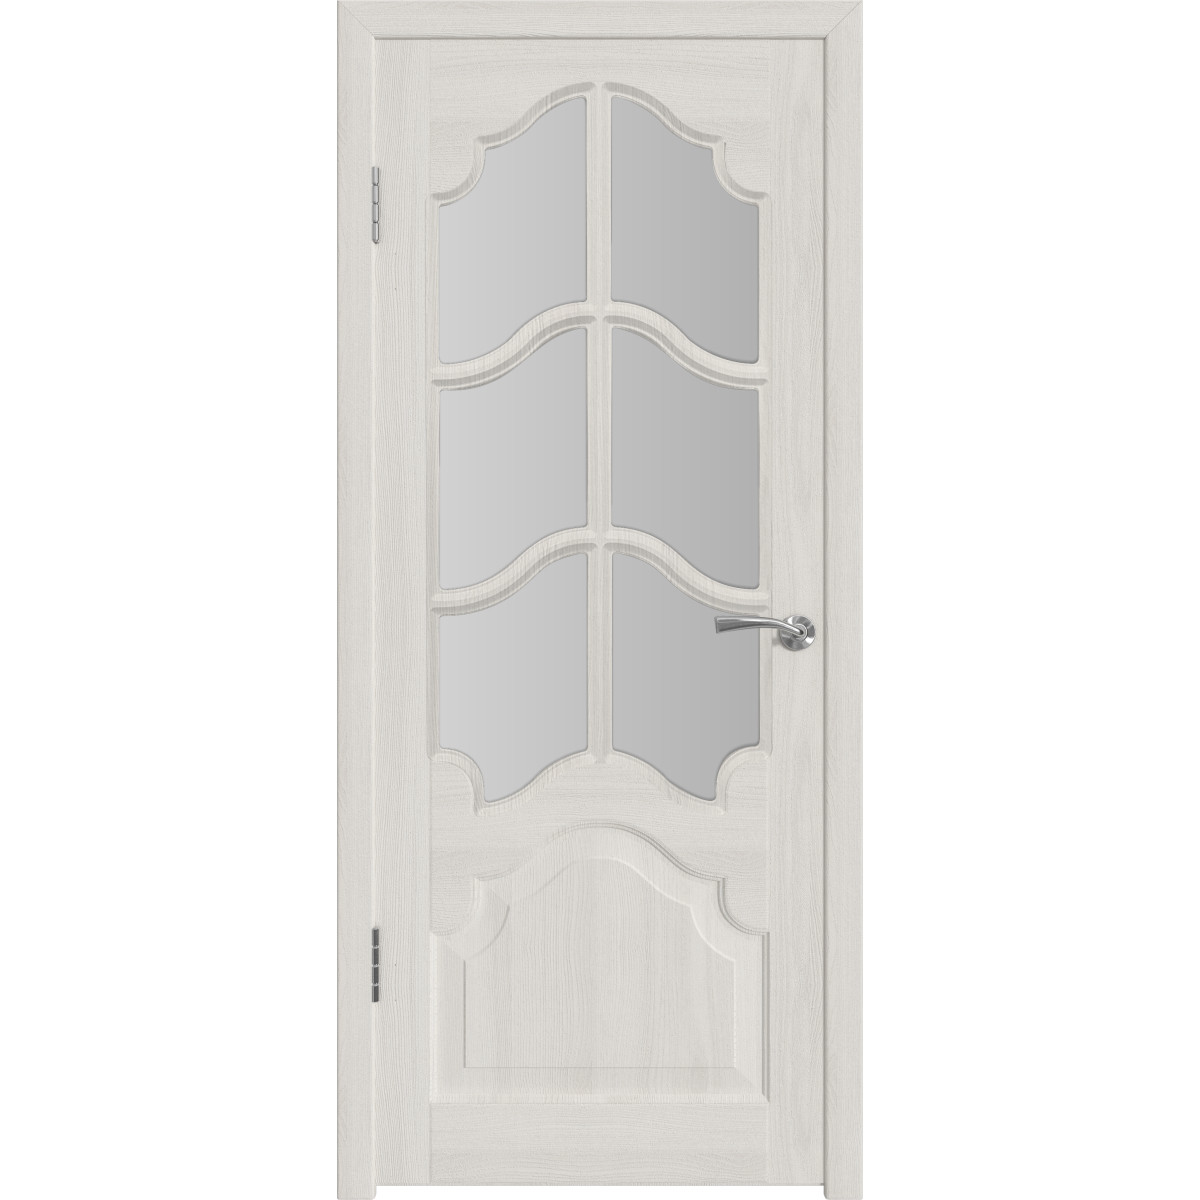 Дверь межкомнатная остеклённая с замком и петлями в комплекте Венеция 80x200 см ПП цвет белёный дуб